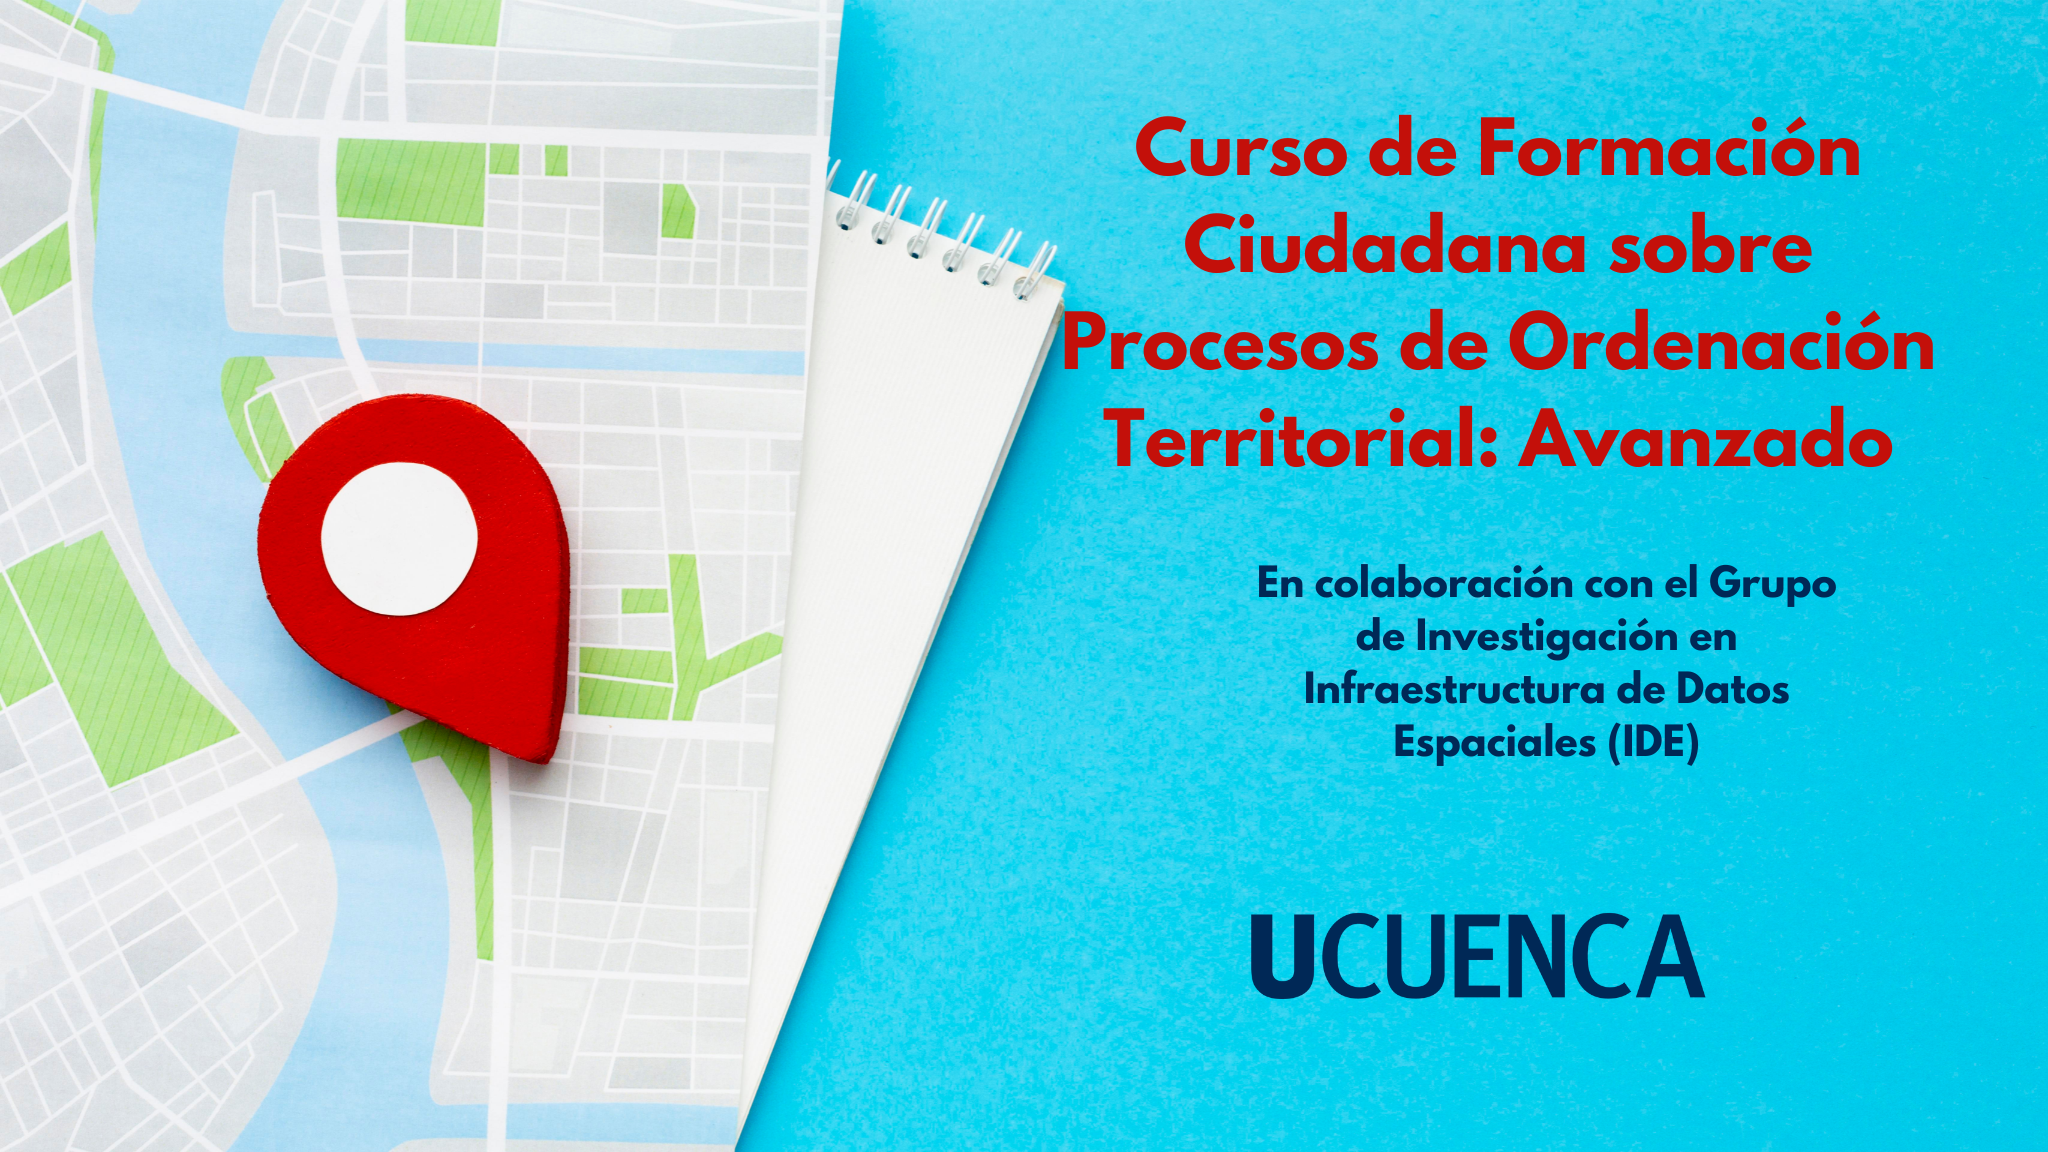 Curso de formación ciudadana sobre Procesos de Ordenación Territorial: Avanzado UC-BD-005